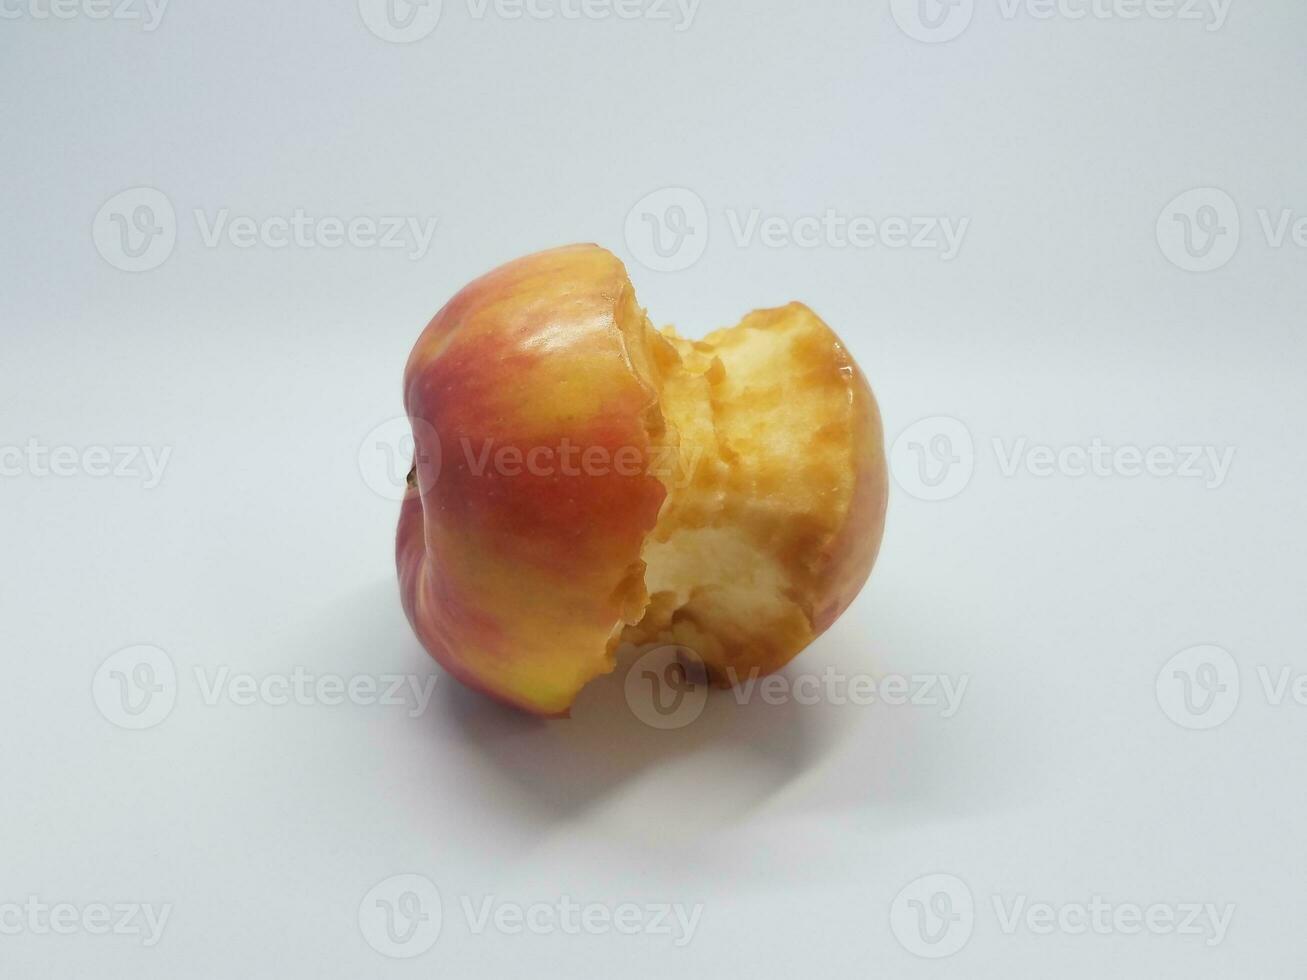 gegeten appelkern op witte backround foto